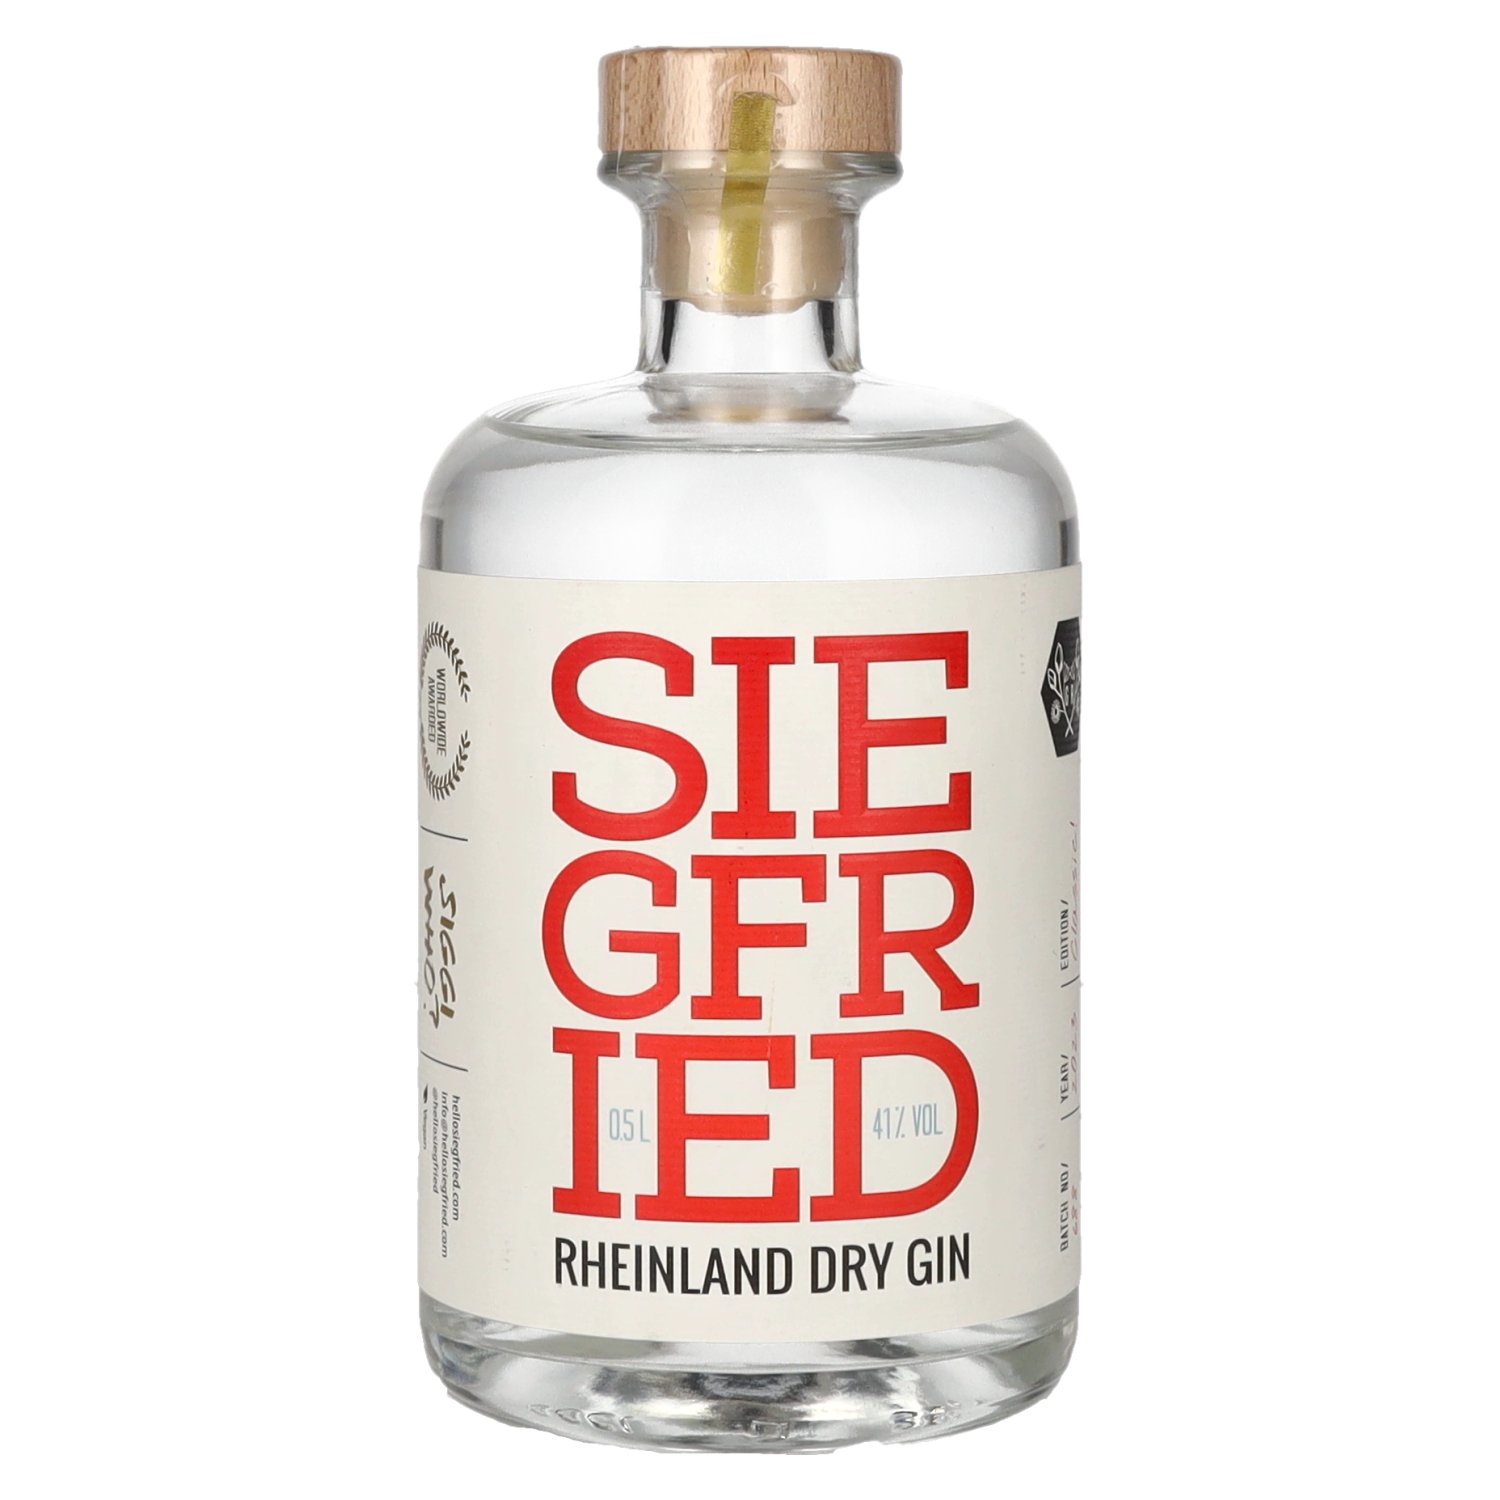 41% - Vol. Gin Rheinland 0,5l Siegfried delicando Dry